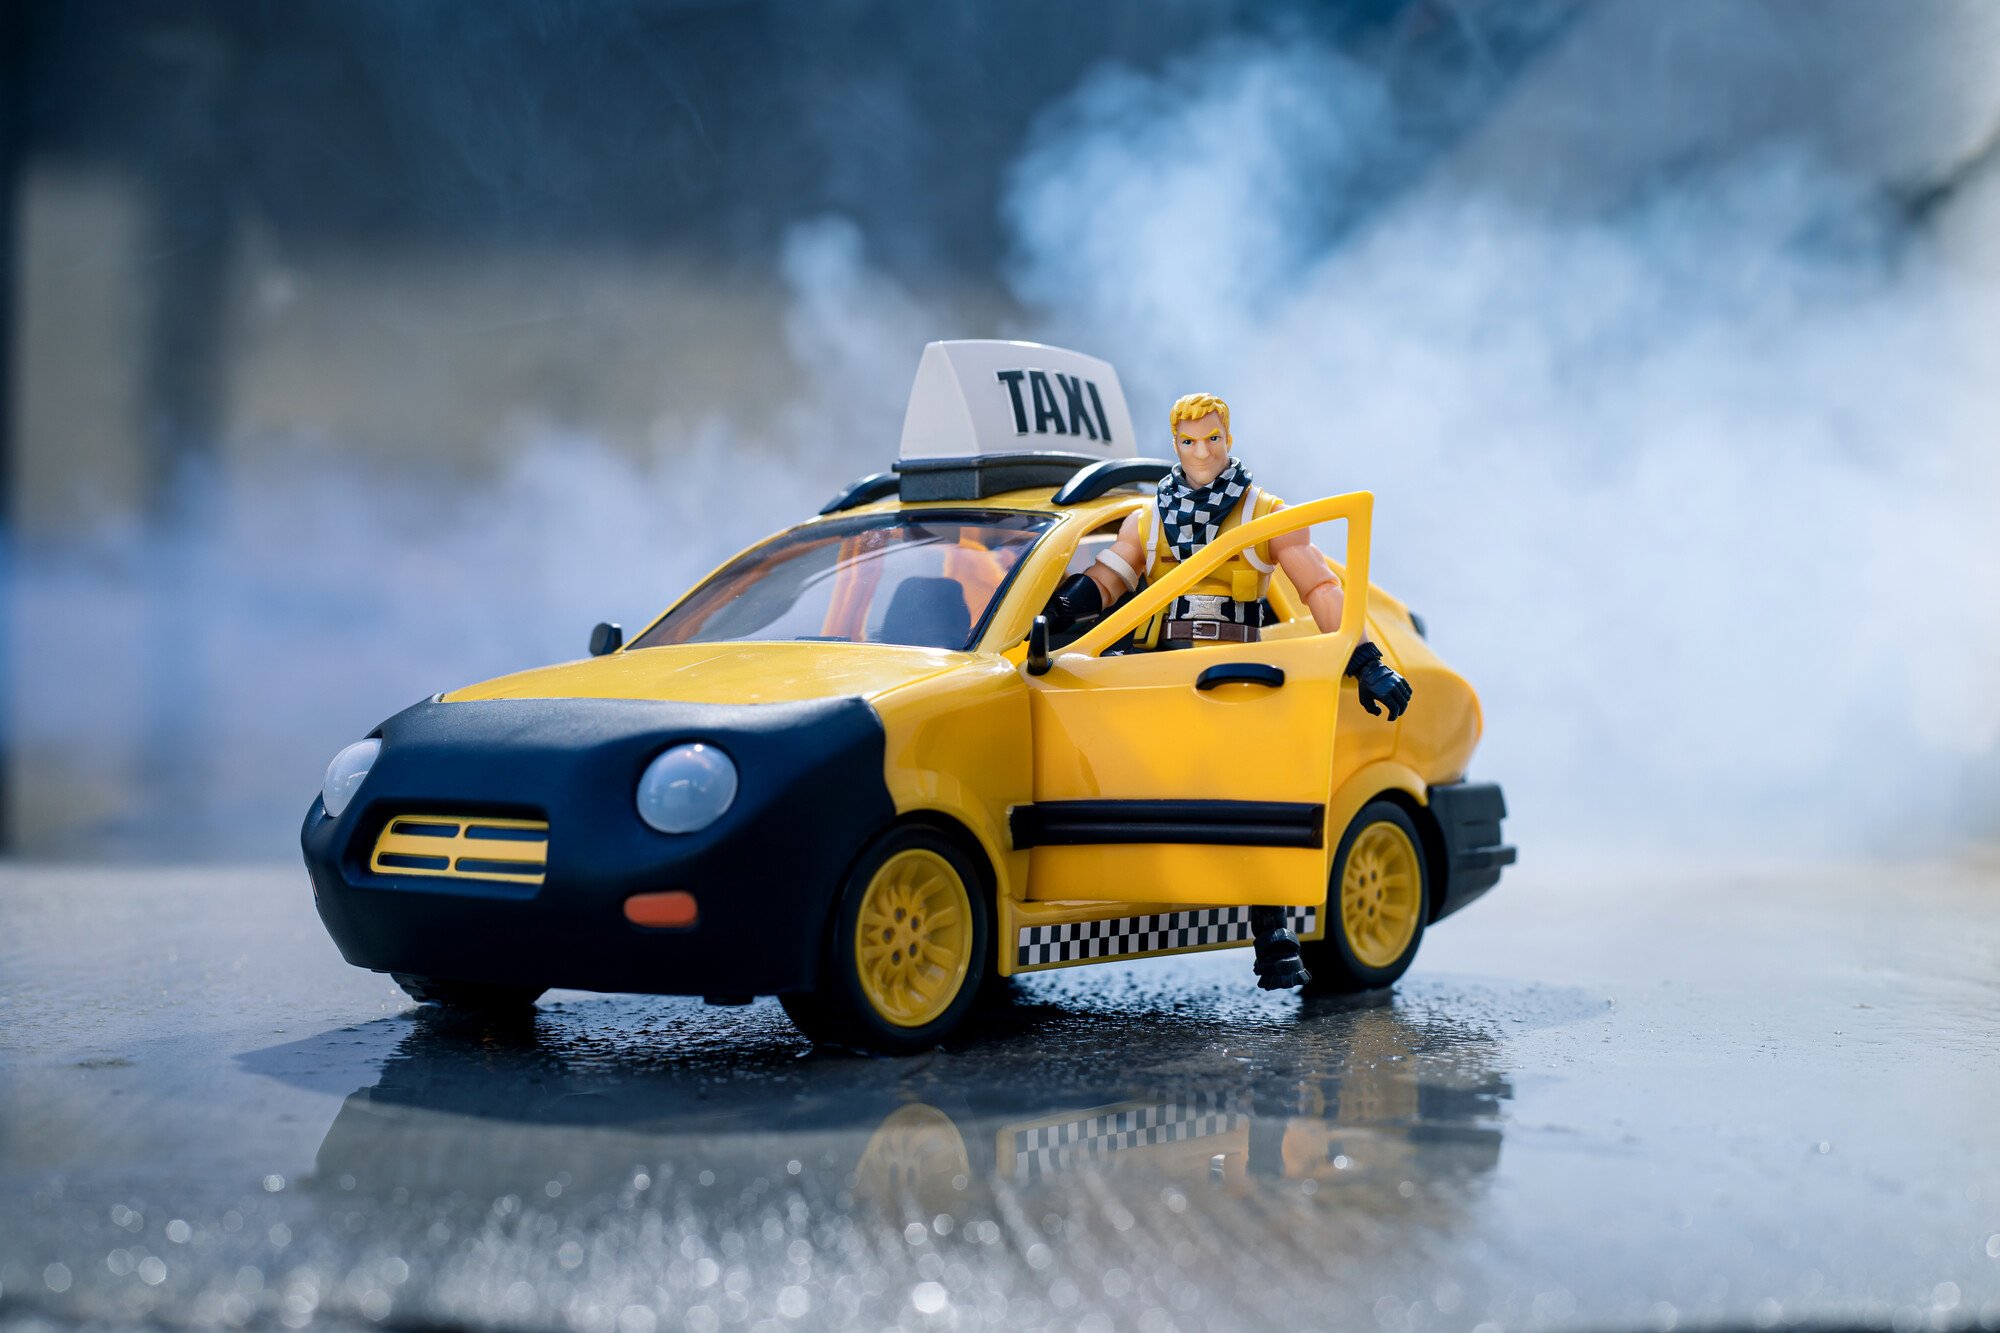 Ігровий набір Jazwares Fortnite Joy Ride Vehicle Taxi Cab, автомобіль і фігурка (FNT0817) - фото 11